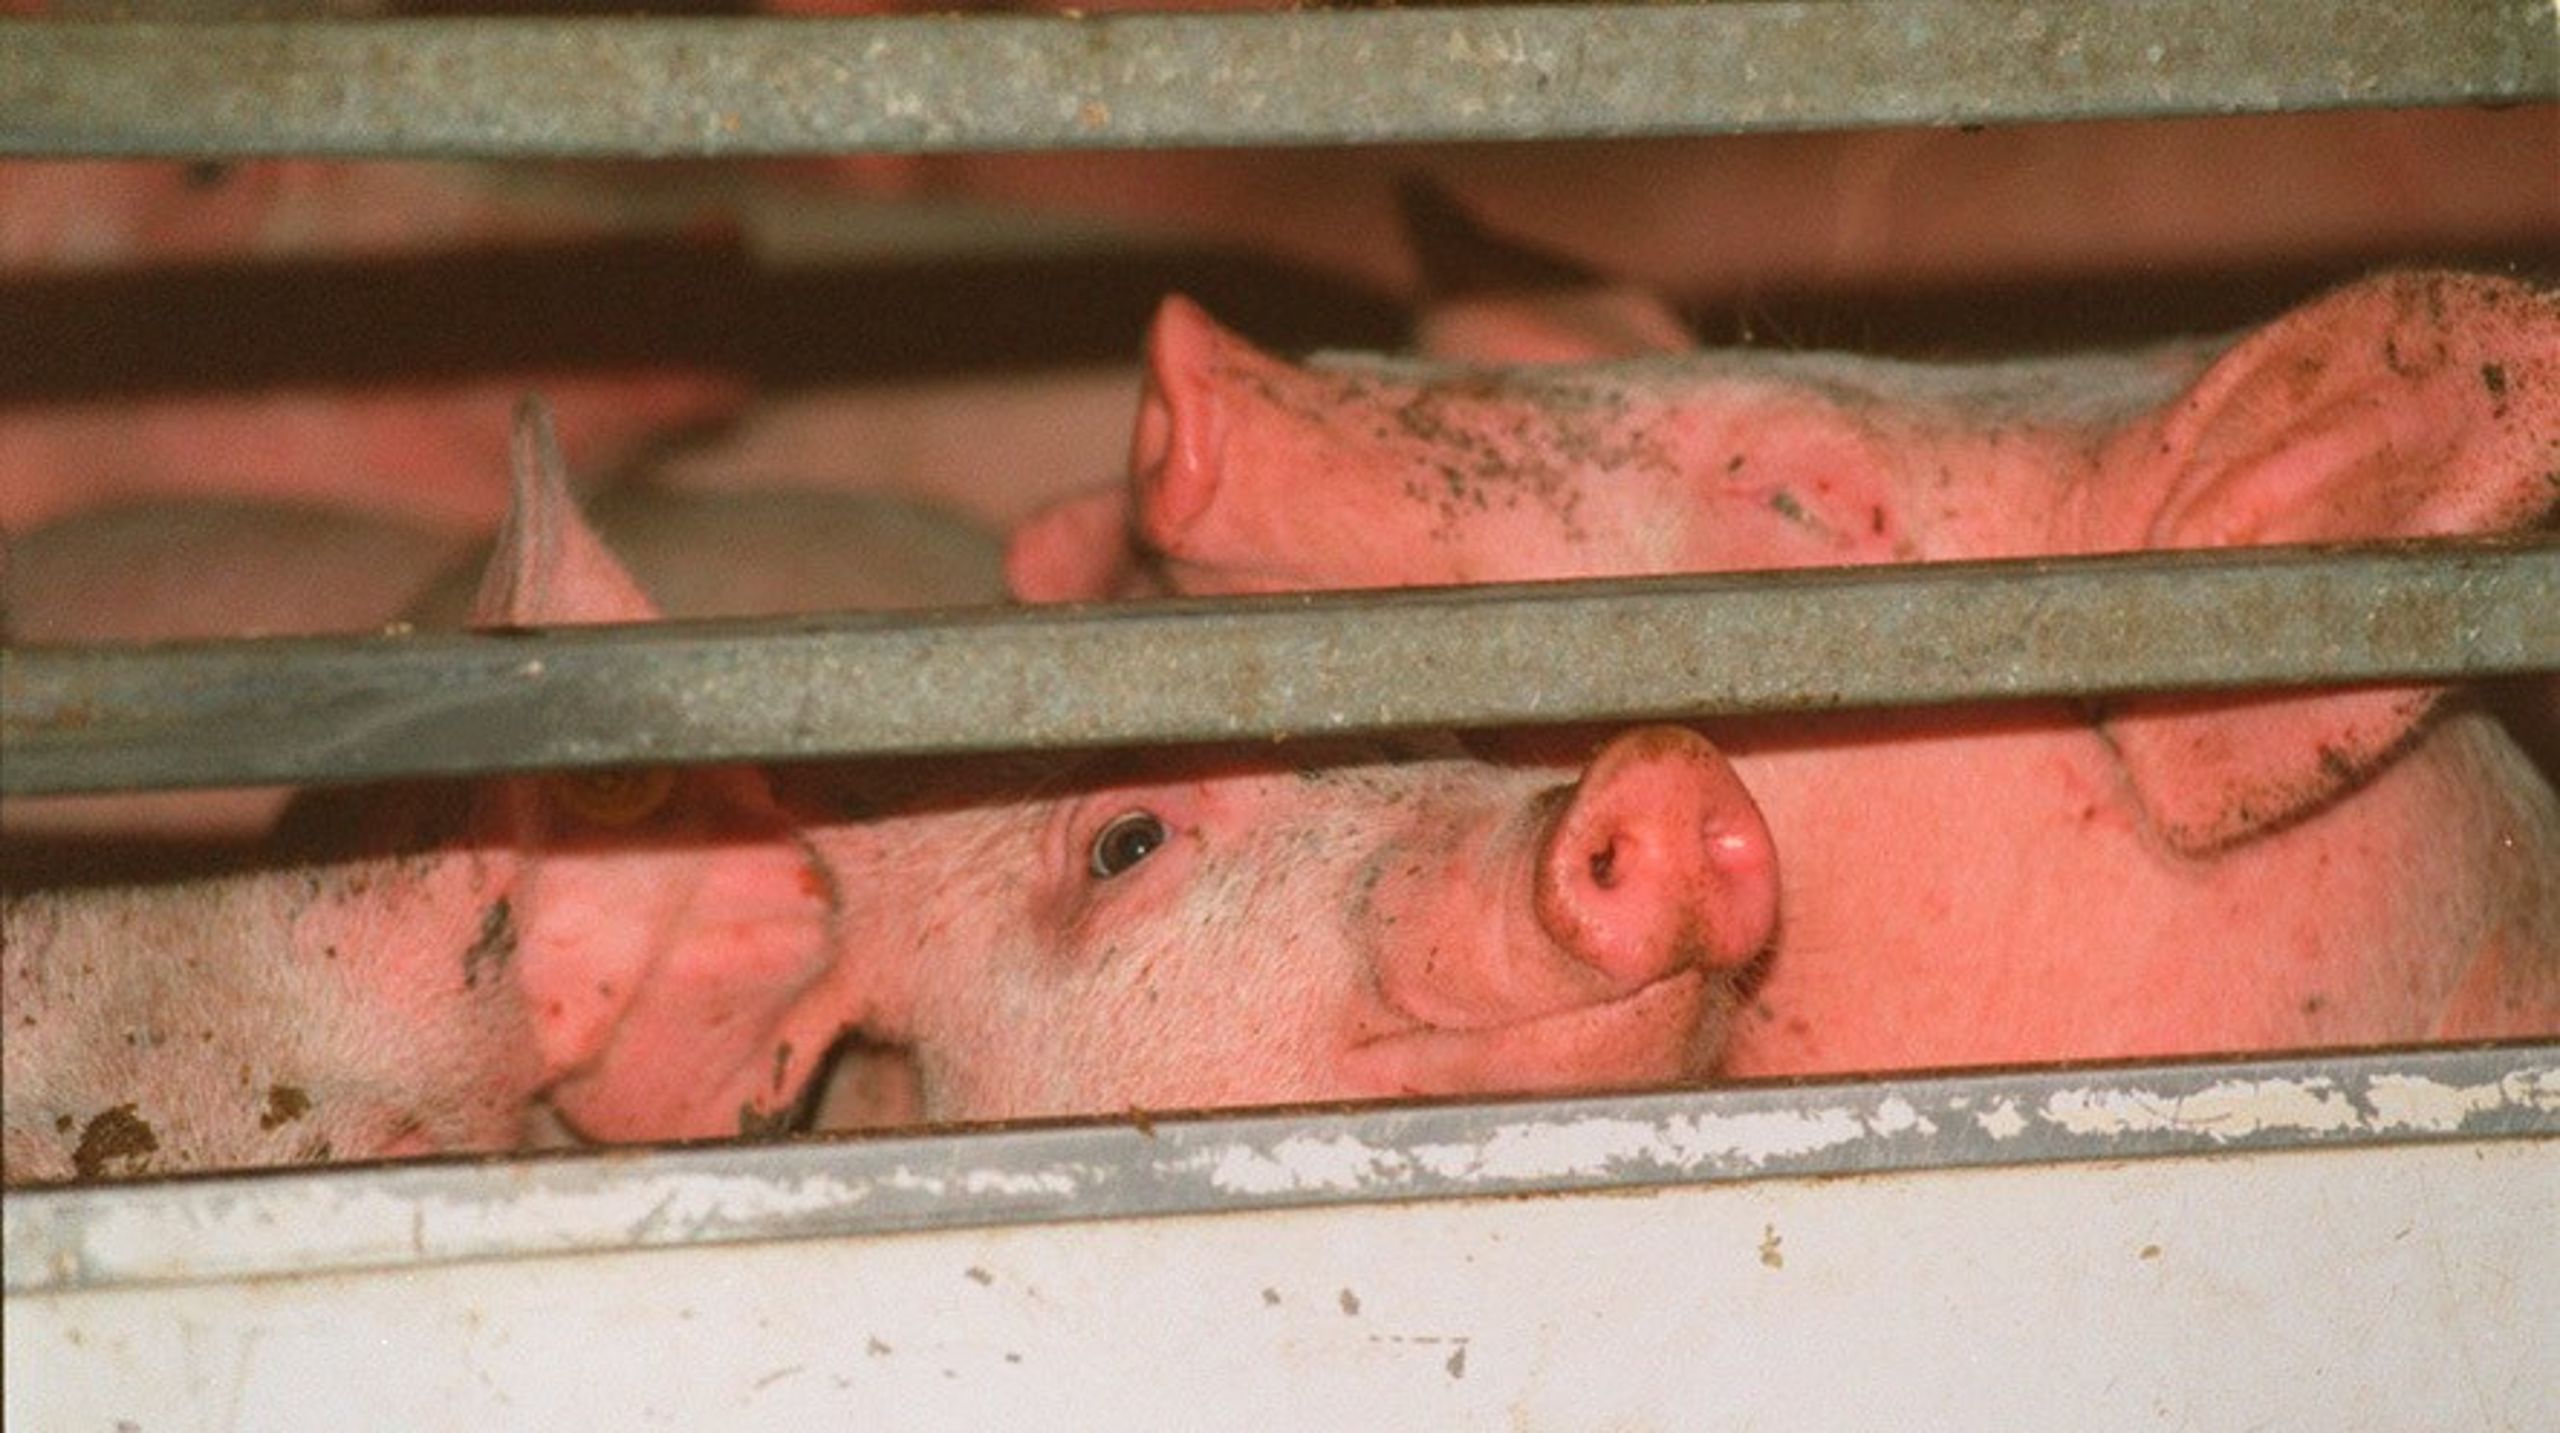 Det er tudetosset ikke at lytte til den europæiske forskning på området og forbedre grisenes vilkår og velfærd bare en smule under den alt for lange transport i EU, skriver Marianne Vind, medlem af Europa-Parlamentet for Socialdemokratiet.